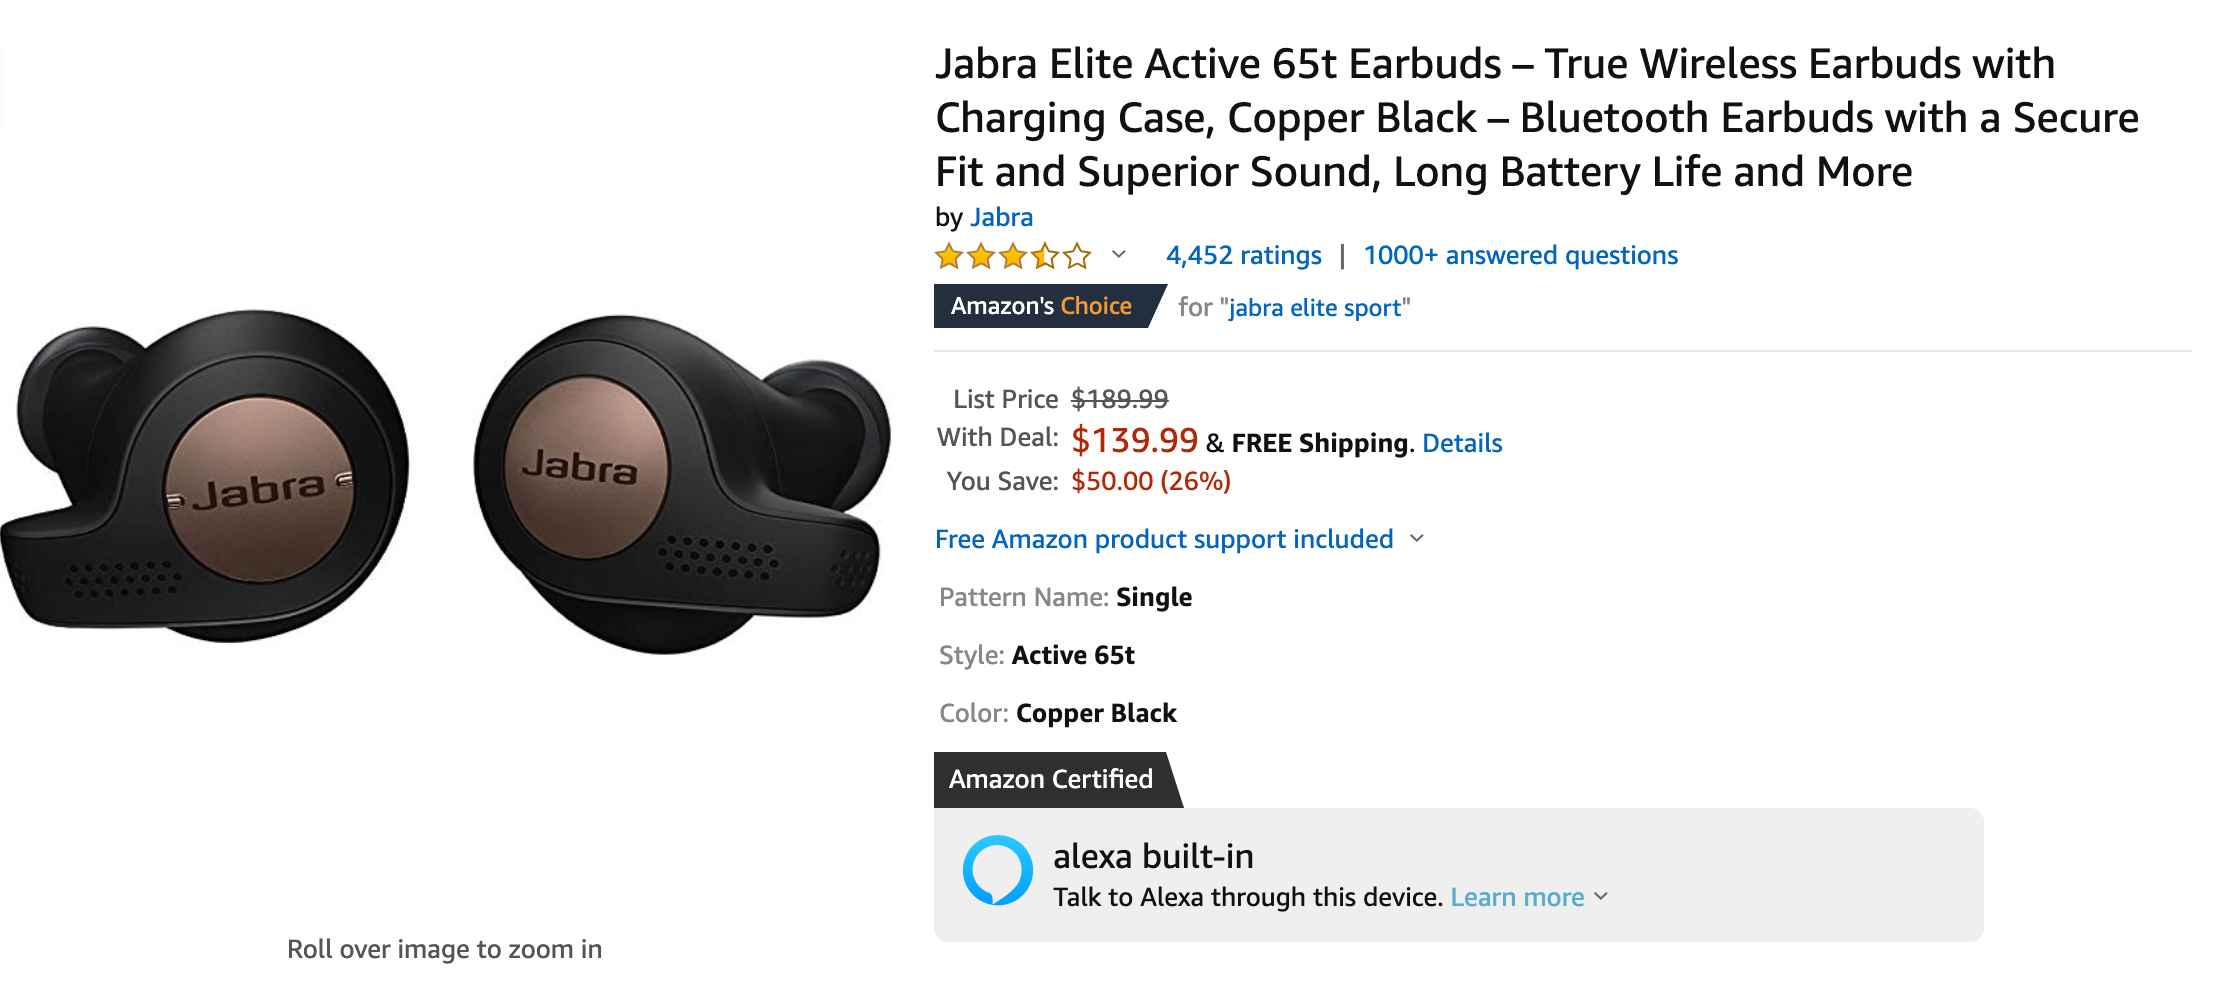 Jabra-Elite-Active-65t-Earbuds